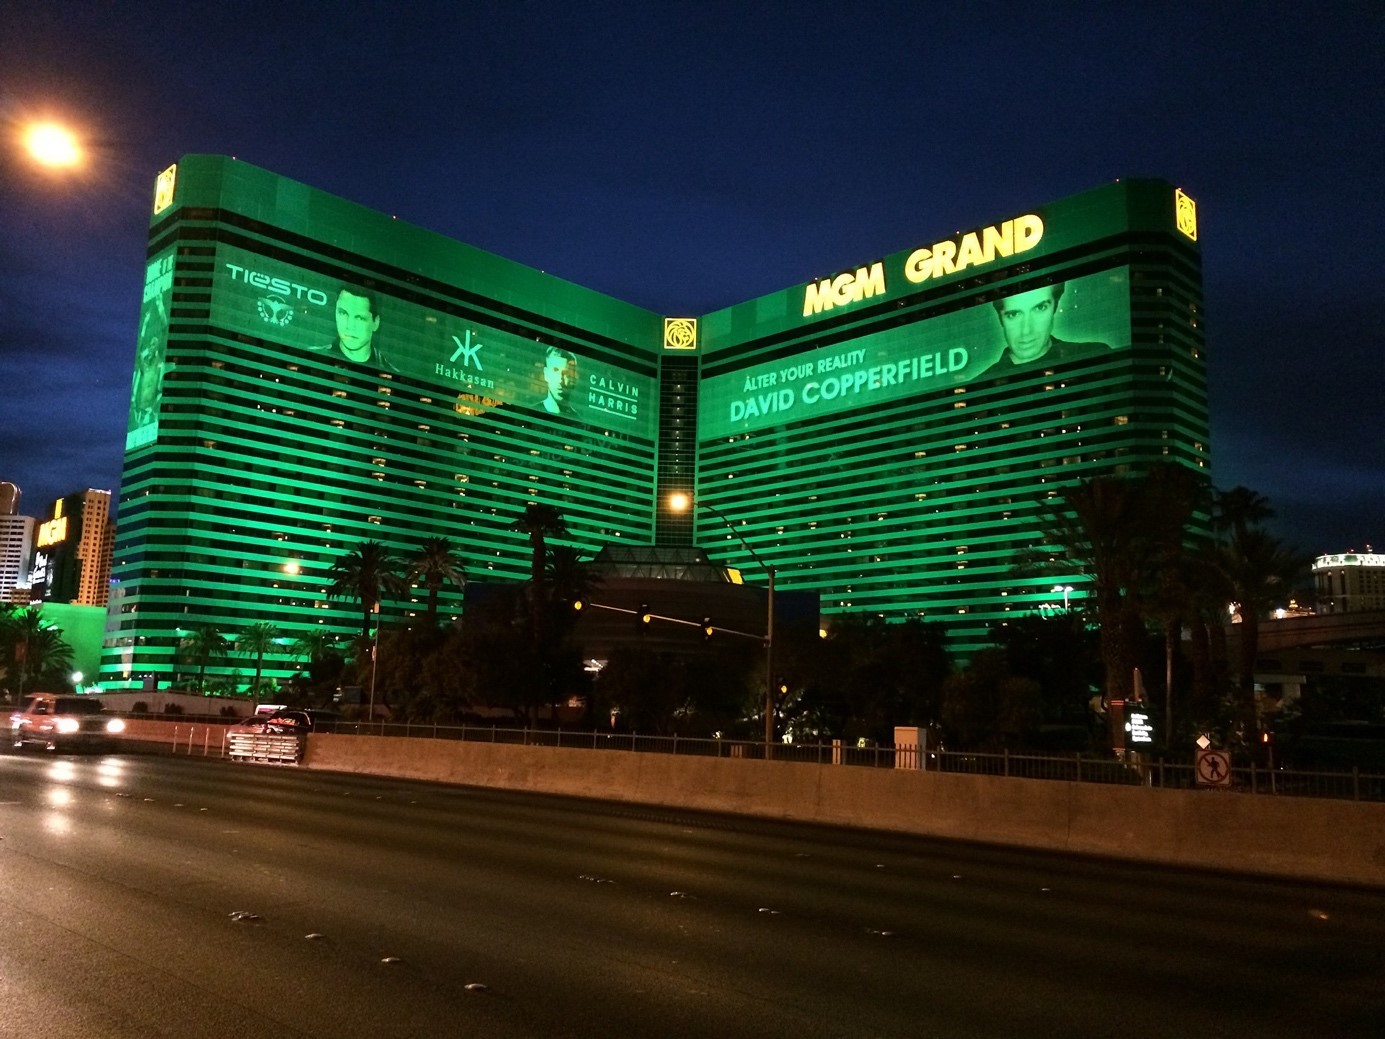 Das MGM Grand Hotel in Las Vegas ist eine der berühmtesten Box-Locations der Welt. Neben dem Madison Square Garden ist es Schauplatz einiger der lukrativsten Boxkämpfe der Geschichte.